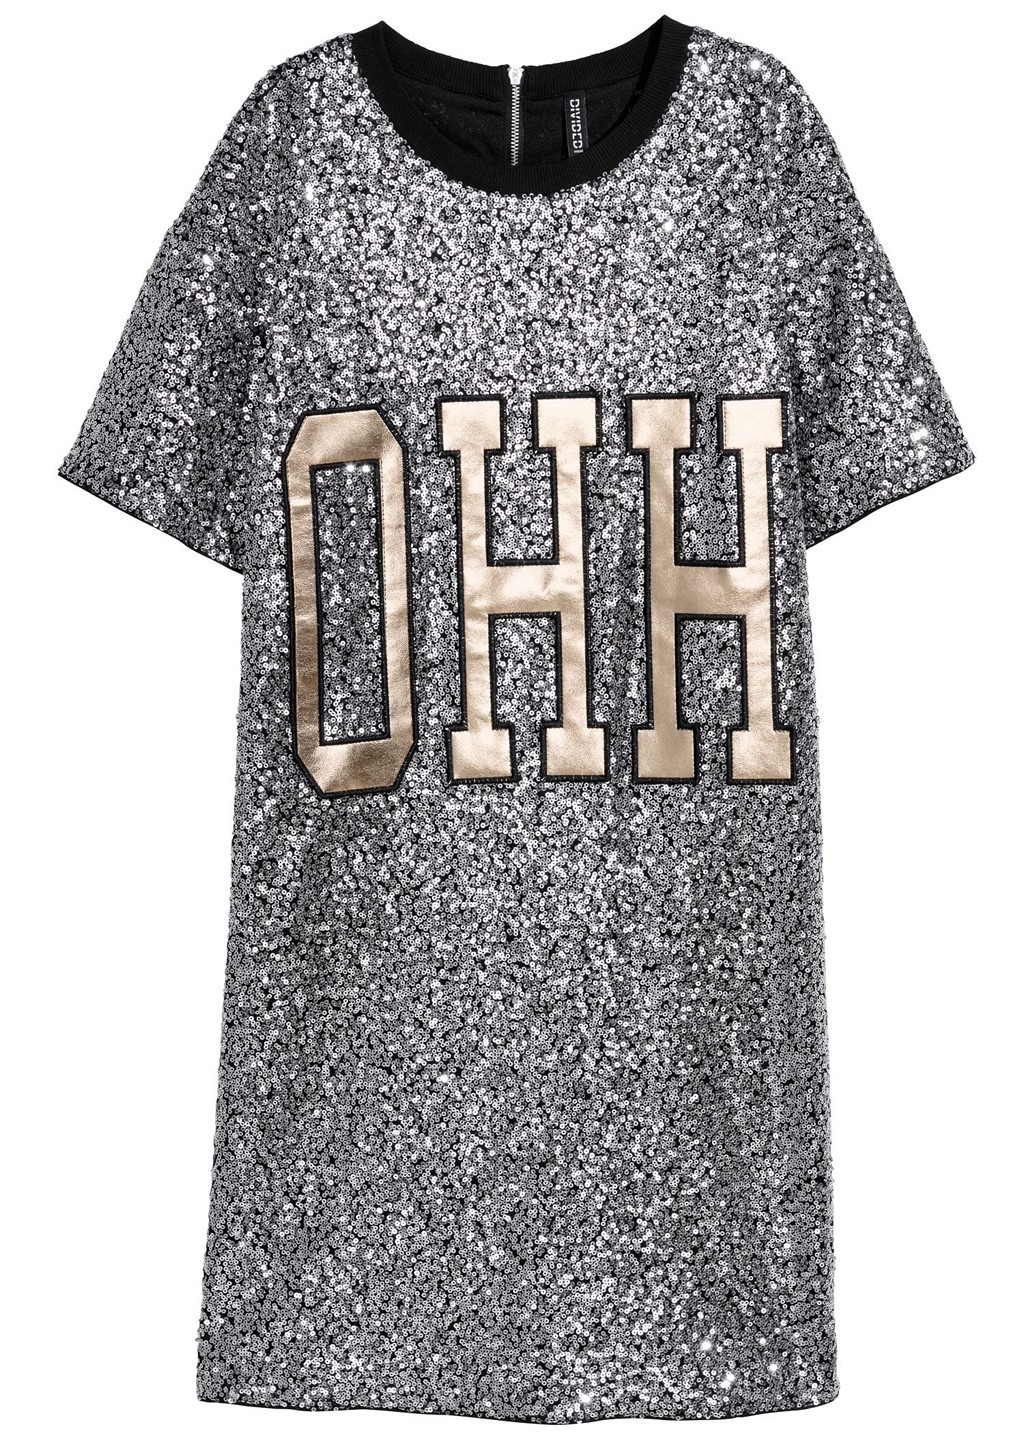 Серебряное платье H&M с надписью